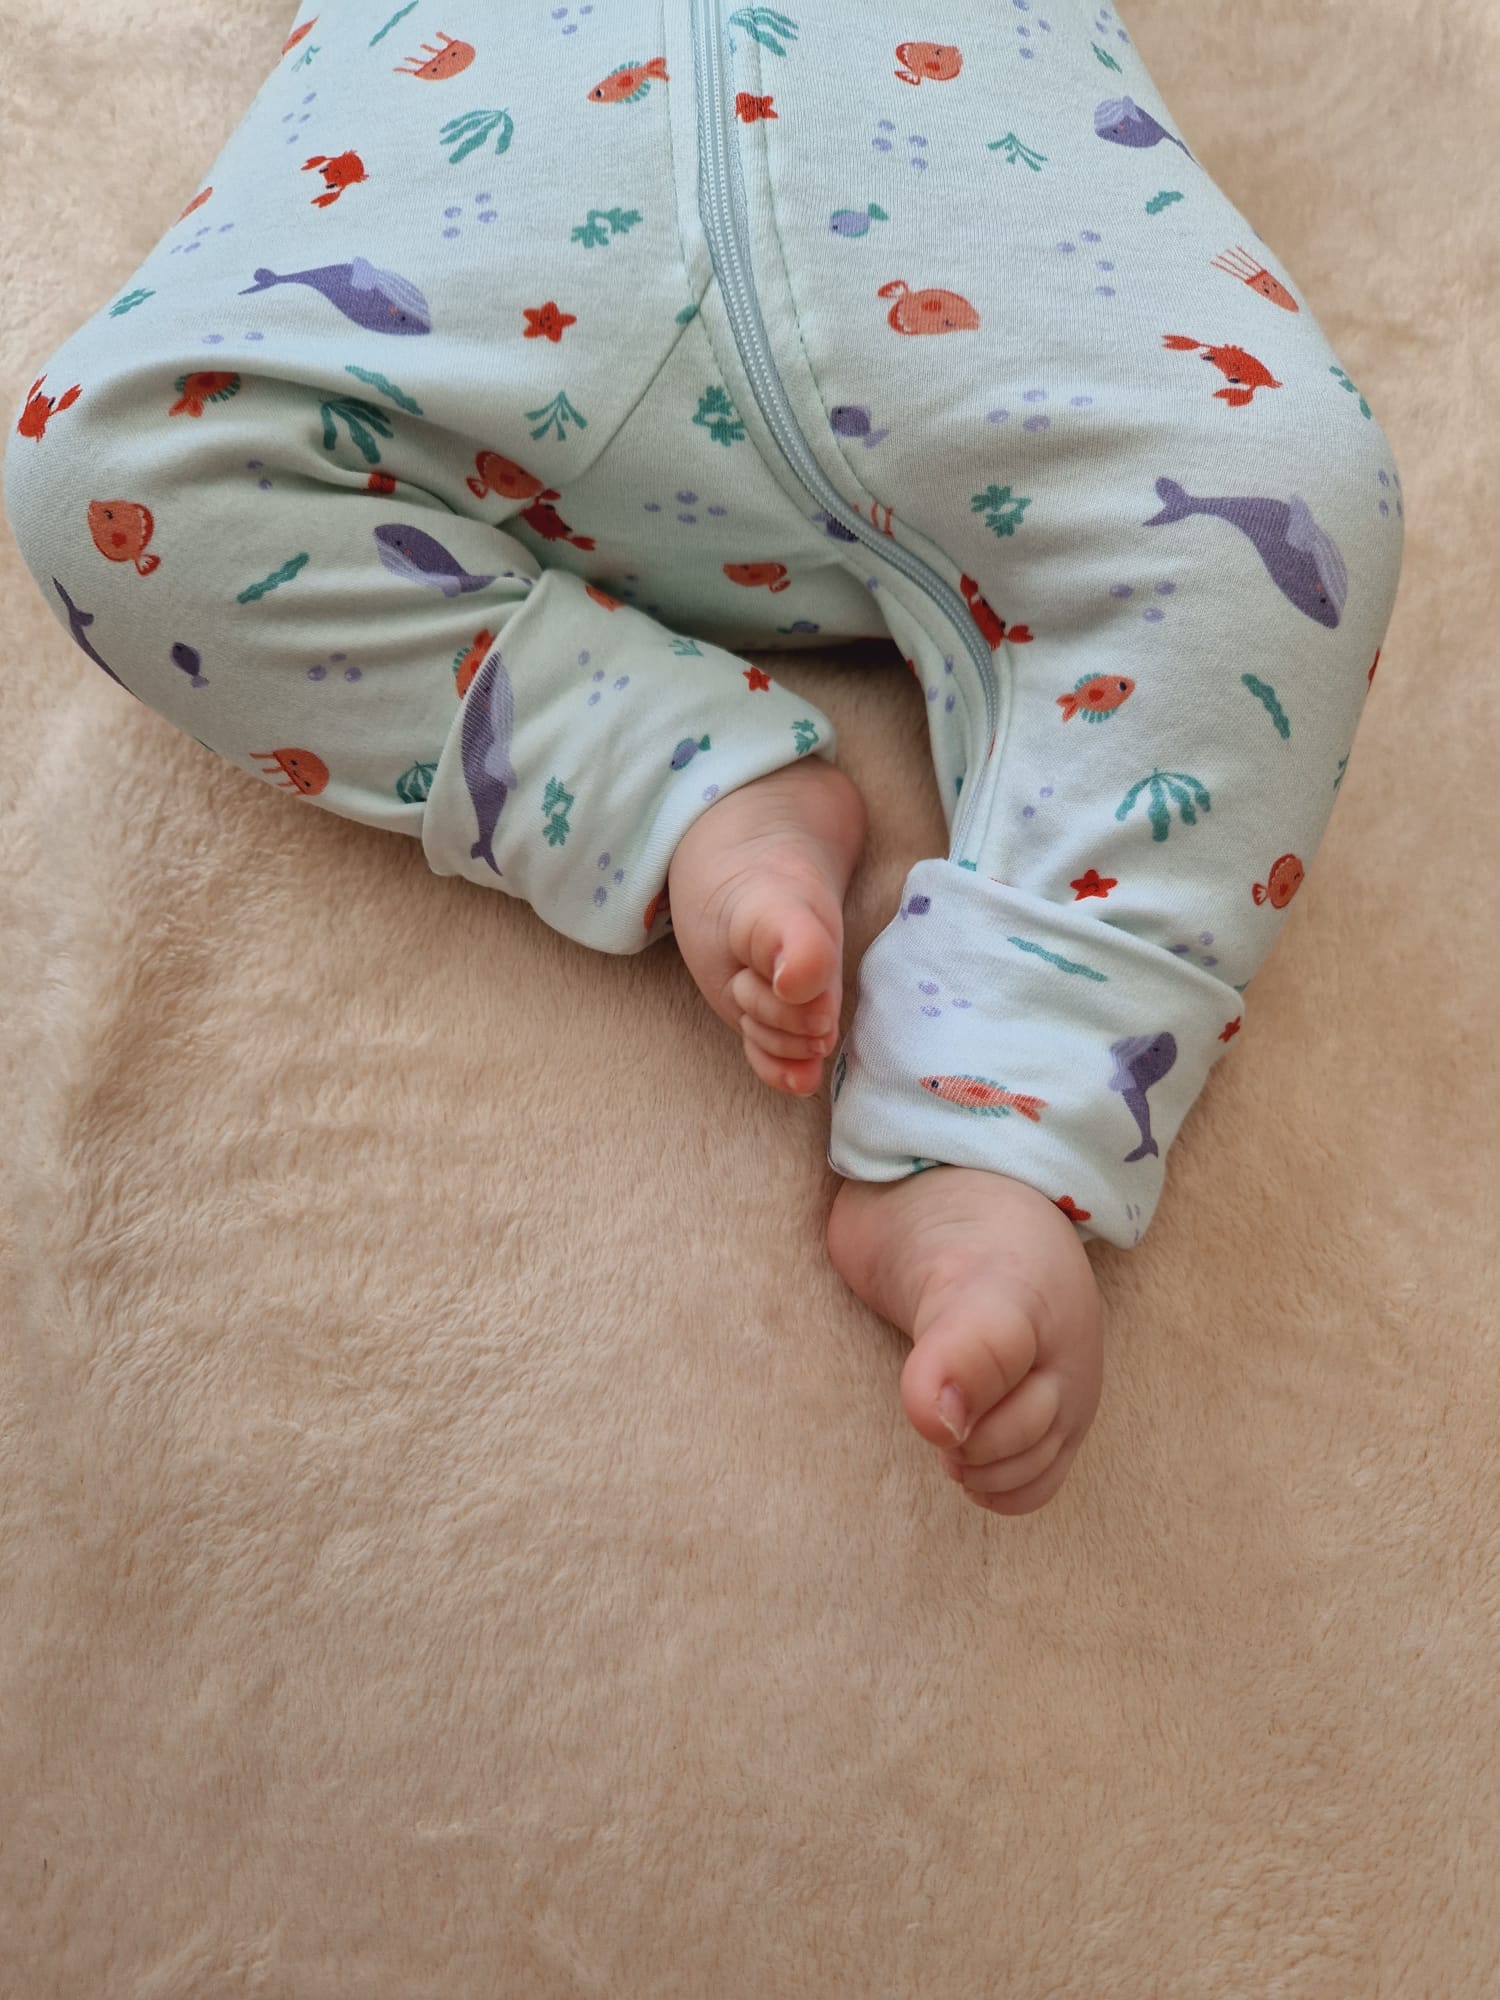 Focus sur la partie bas du corps du bébé présentant les pieds à l'air avec les chaussettes retroussables ouvertes.